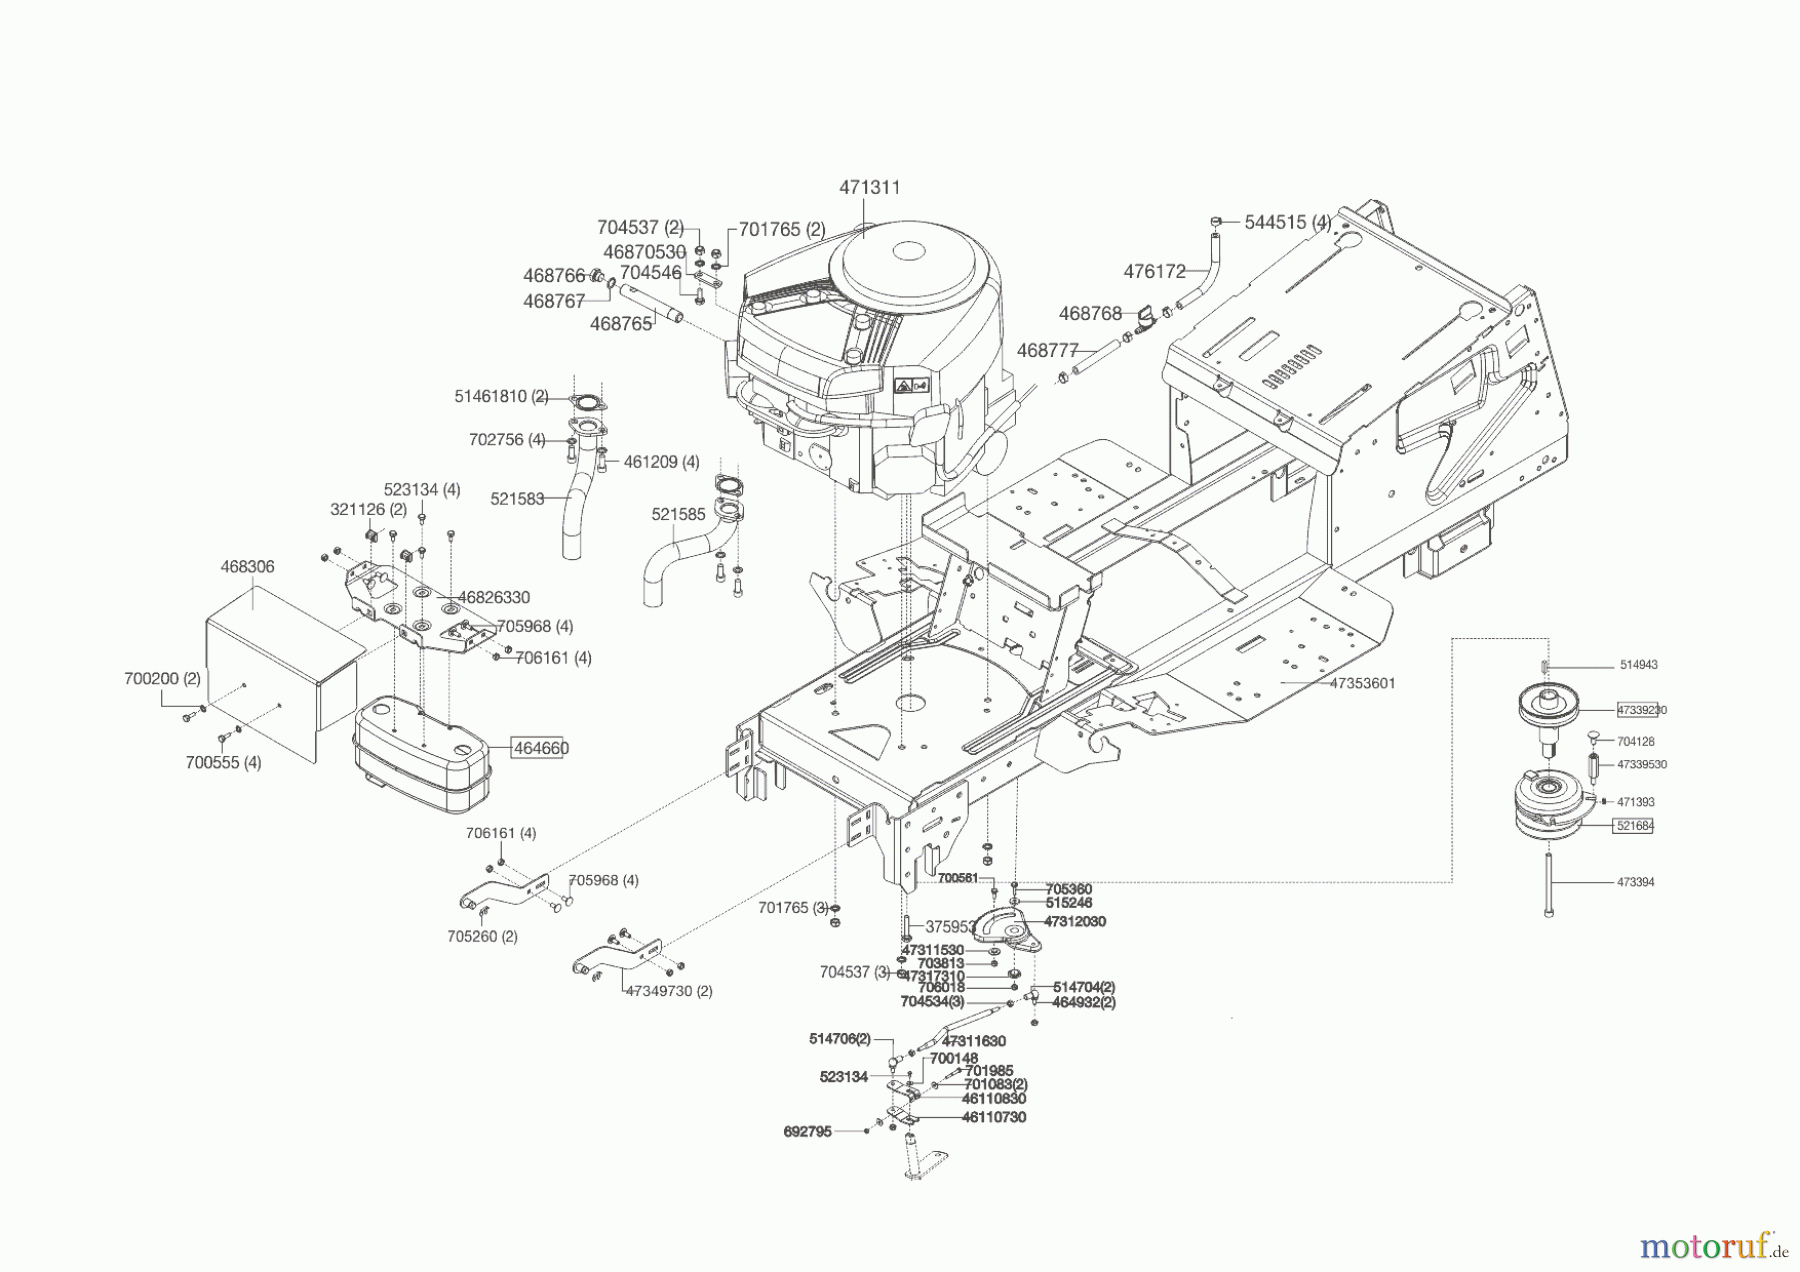  Powerline Gartentechnik Rasentraktor T 16-105.4 HD V2  ab 09/2016 Seite 2